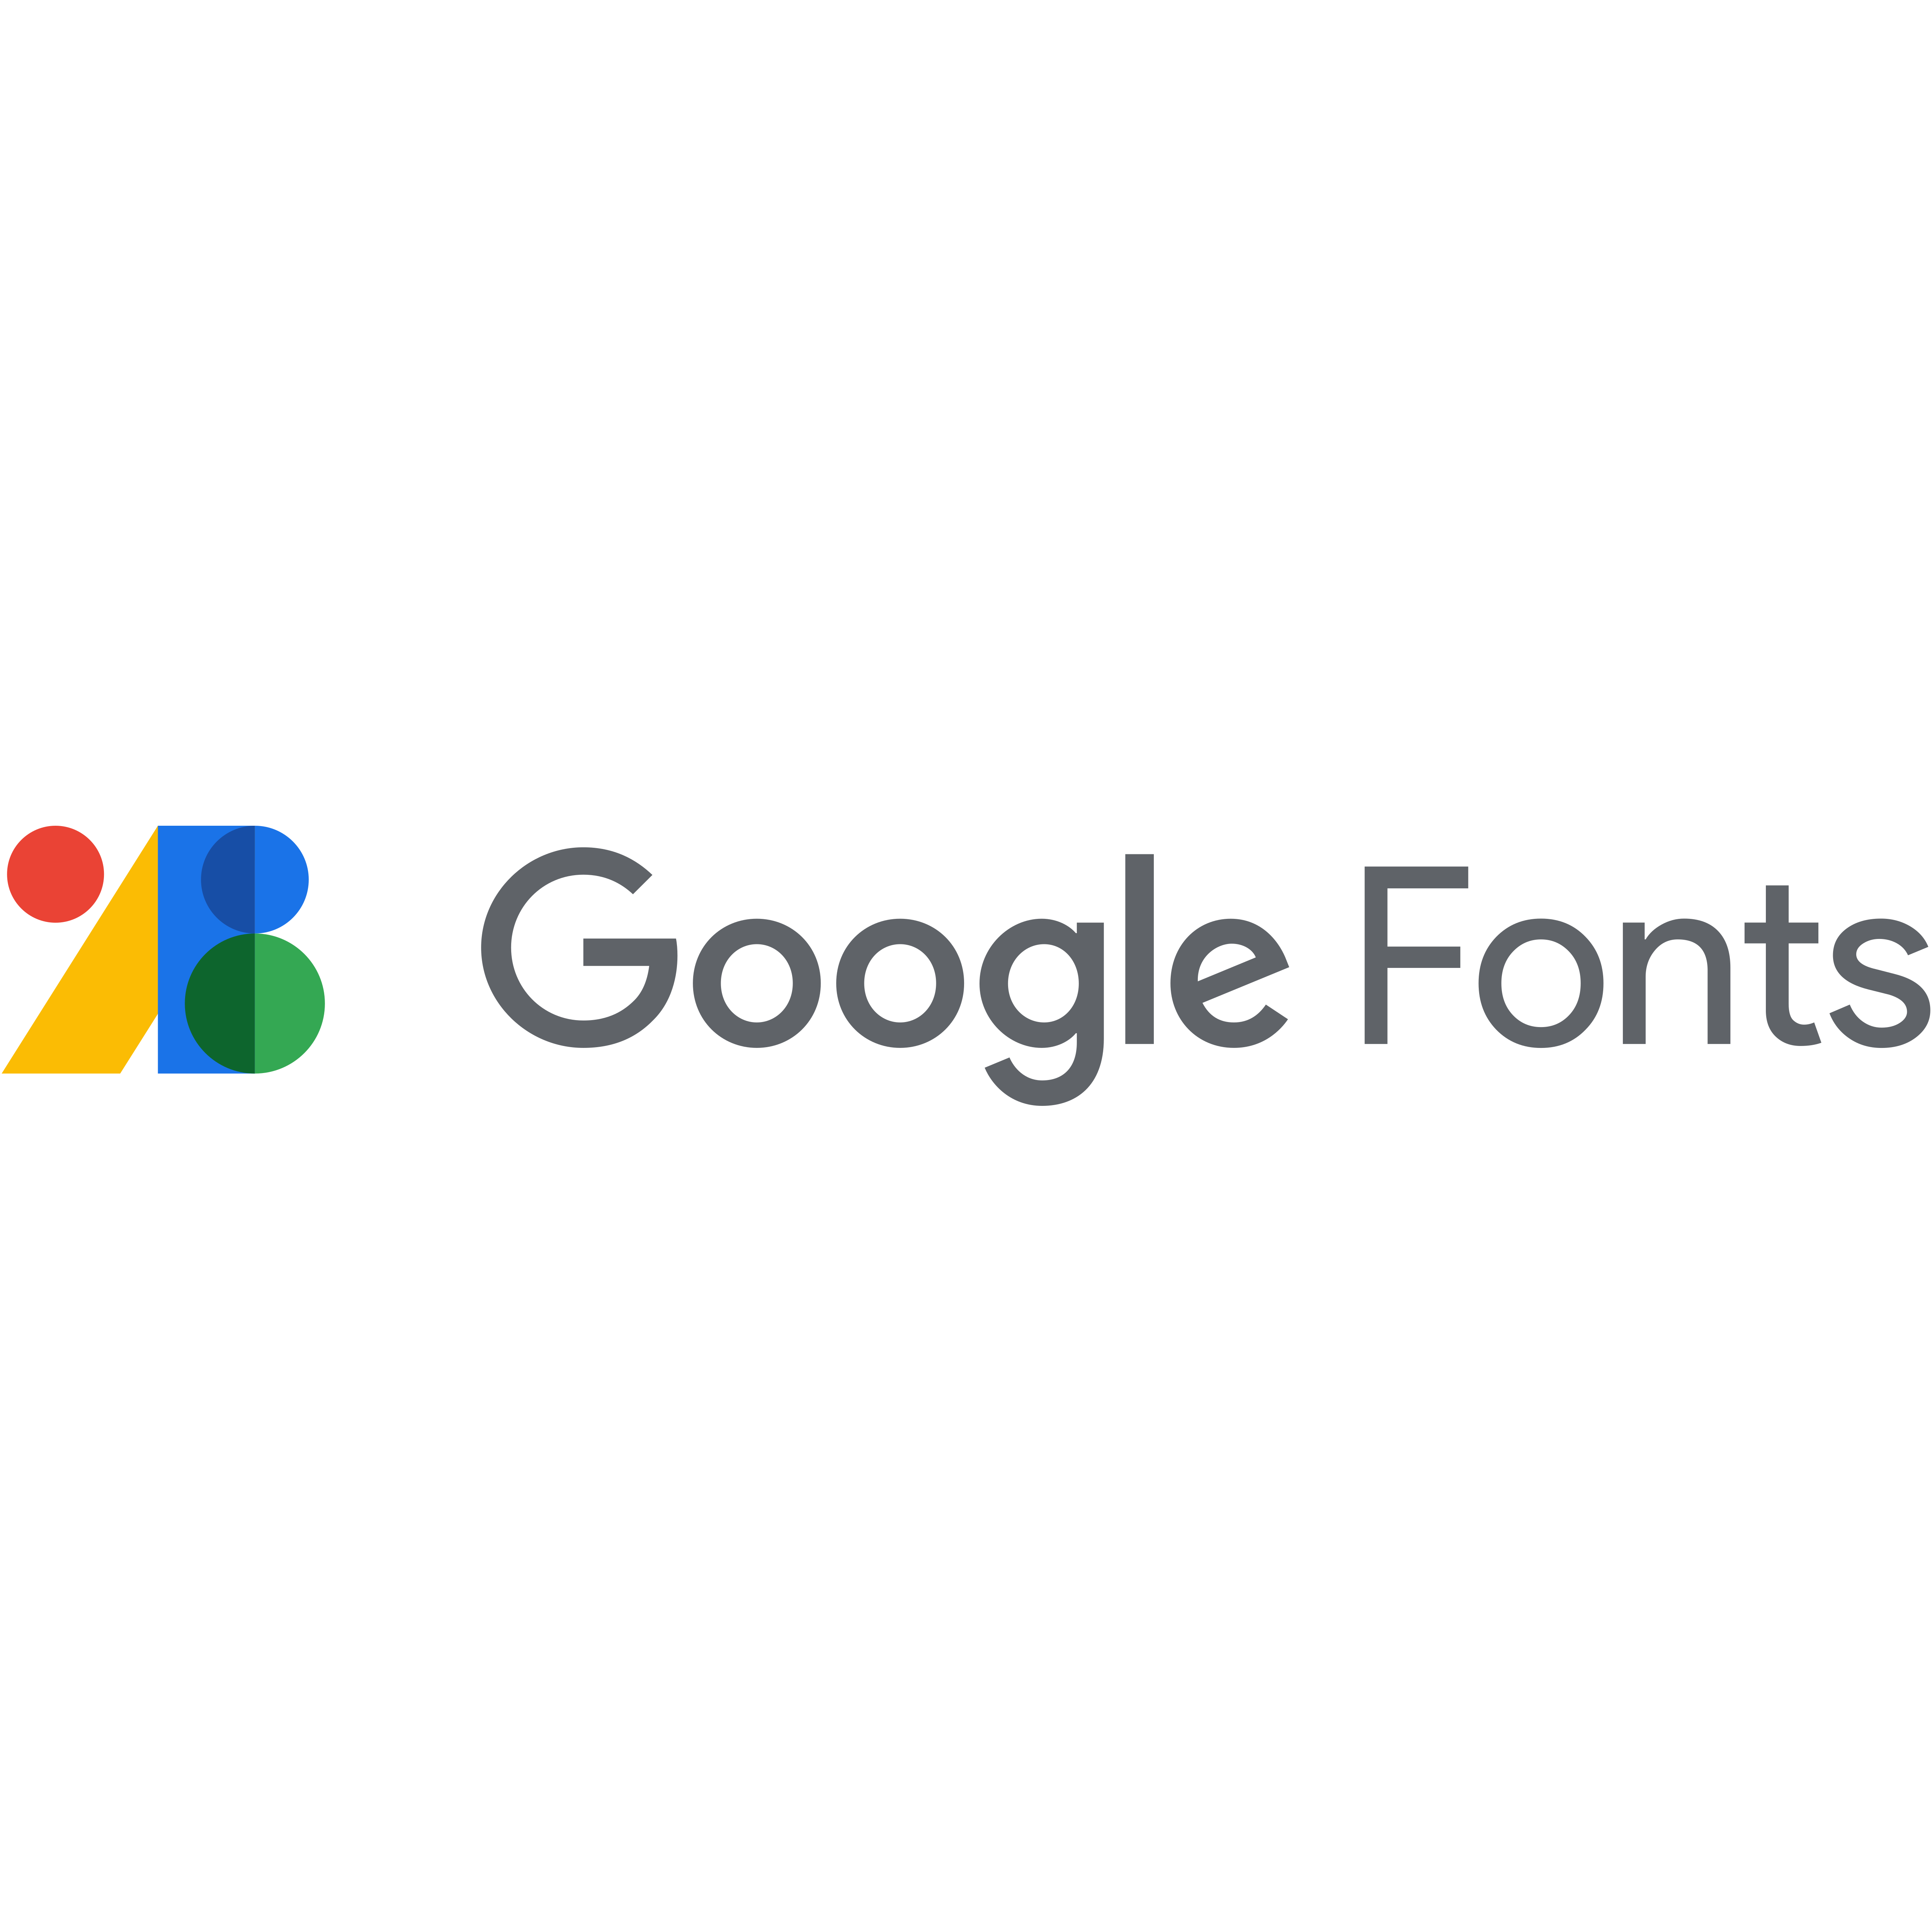 Google Fonts Logo Transparent Image